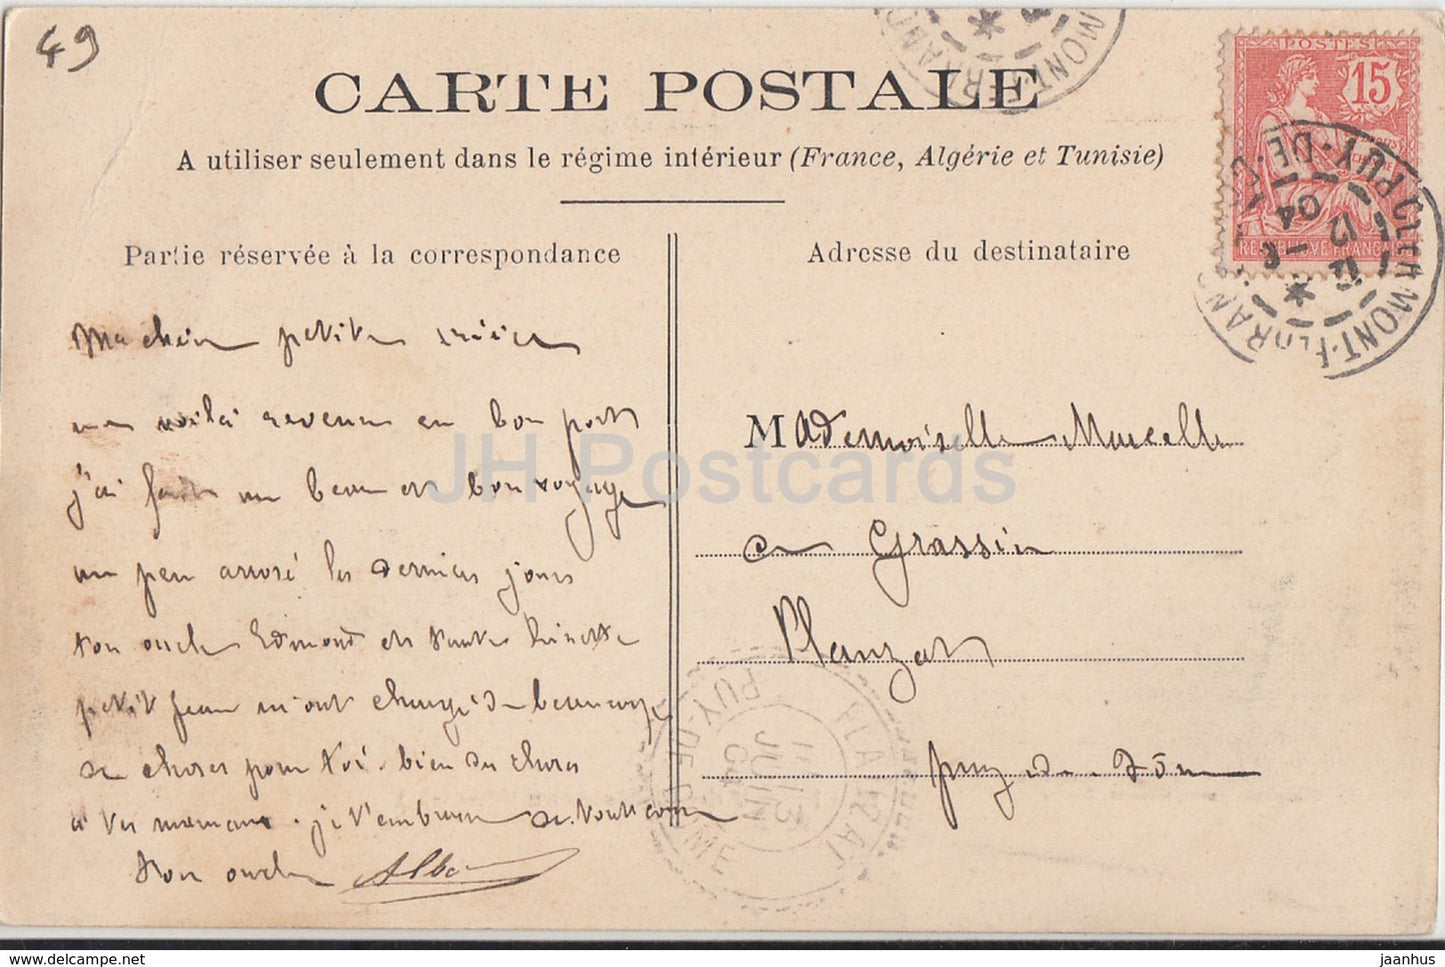 Chateau de Montsoreau - castle - 26 - 1904 - old postcard - France - used